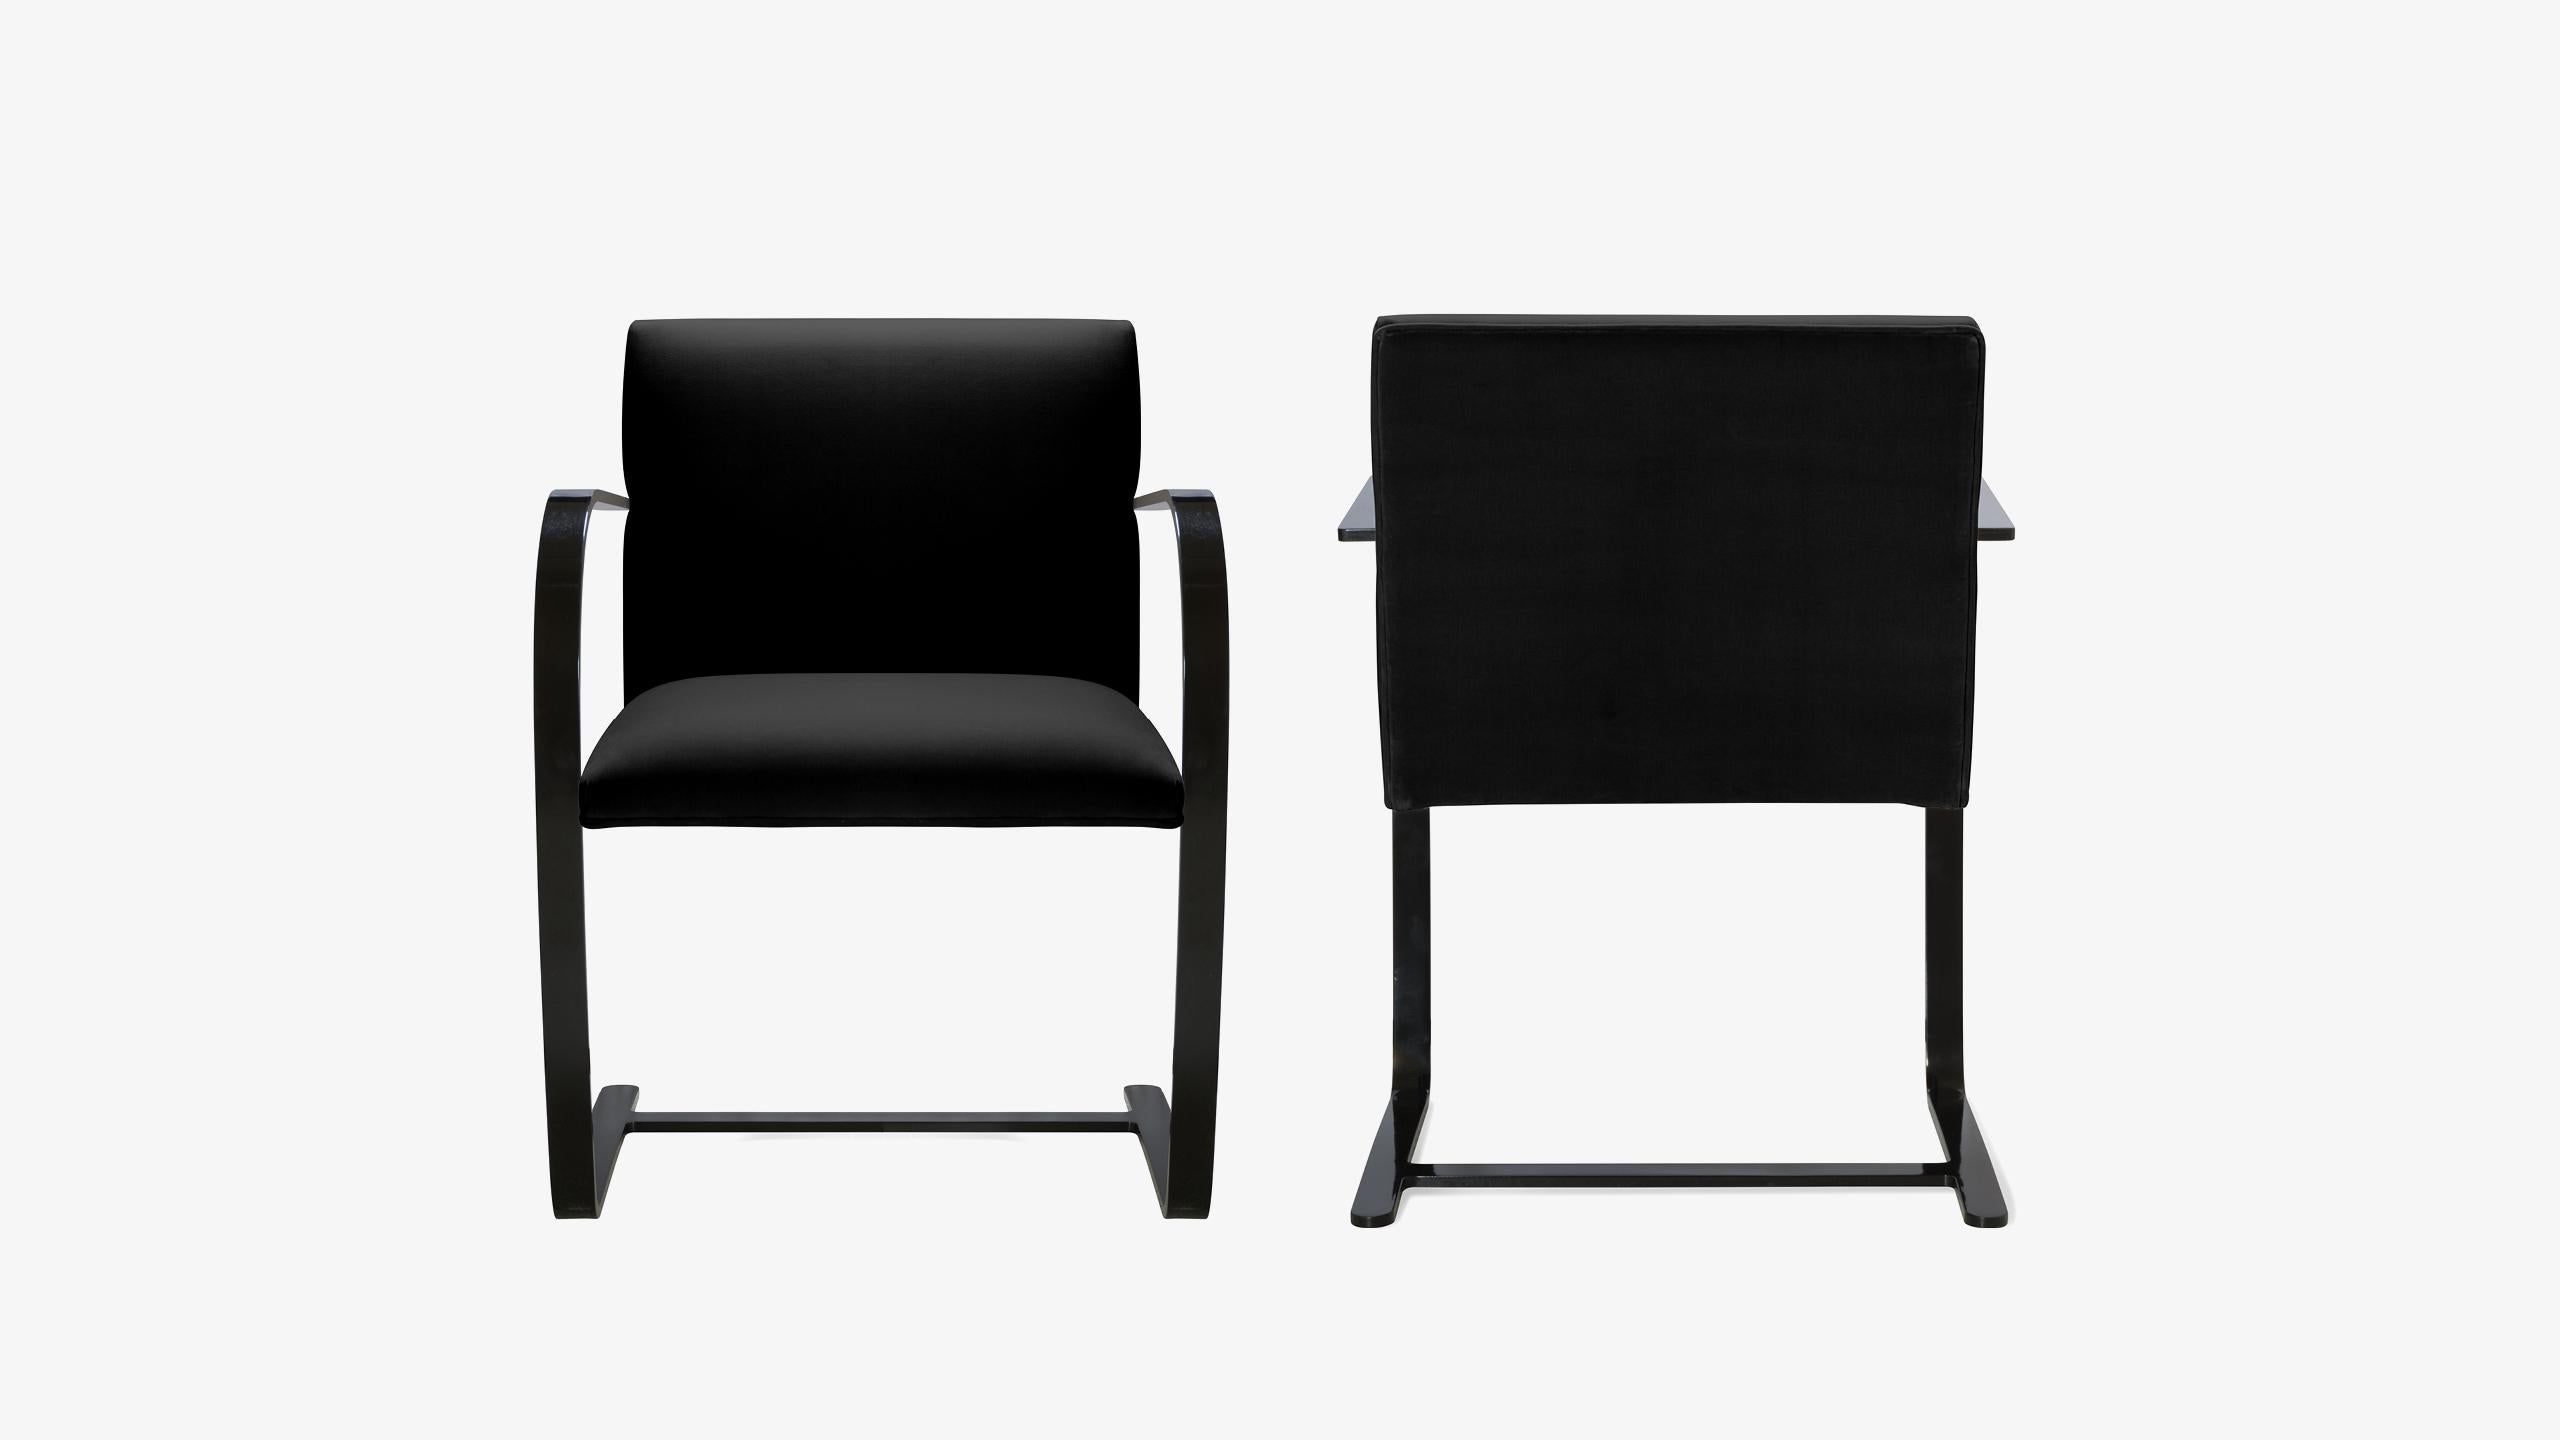 La définition du minimalisme dans un design singulier, réalisé par le grand Ludwig Mies van der Rohe en 1929 ; la chaise Brno Flat-Bar est exactement cela. Nous avons édité ces itérations contemporaines authentiques d'une manière qui n'a jamais été